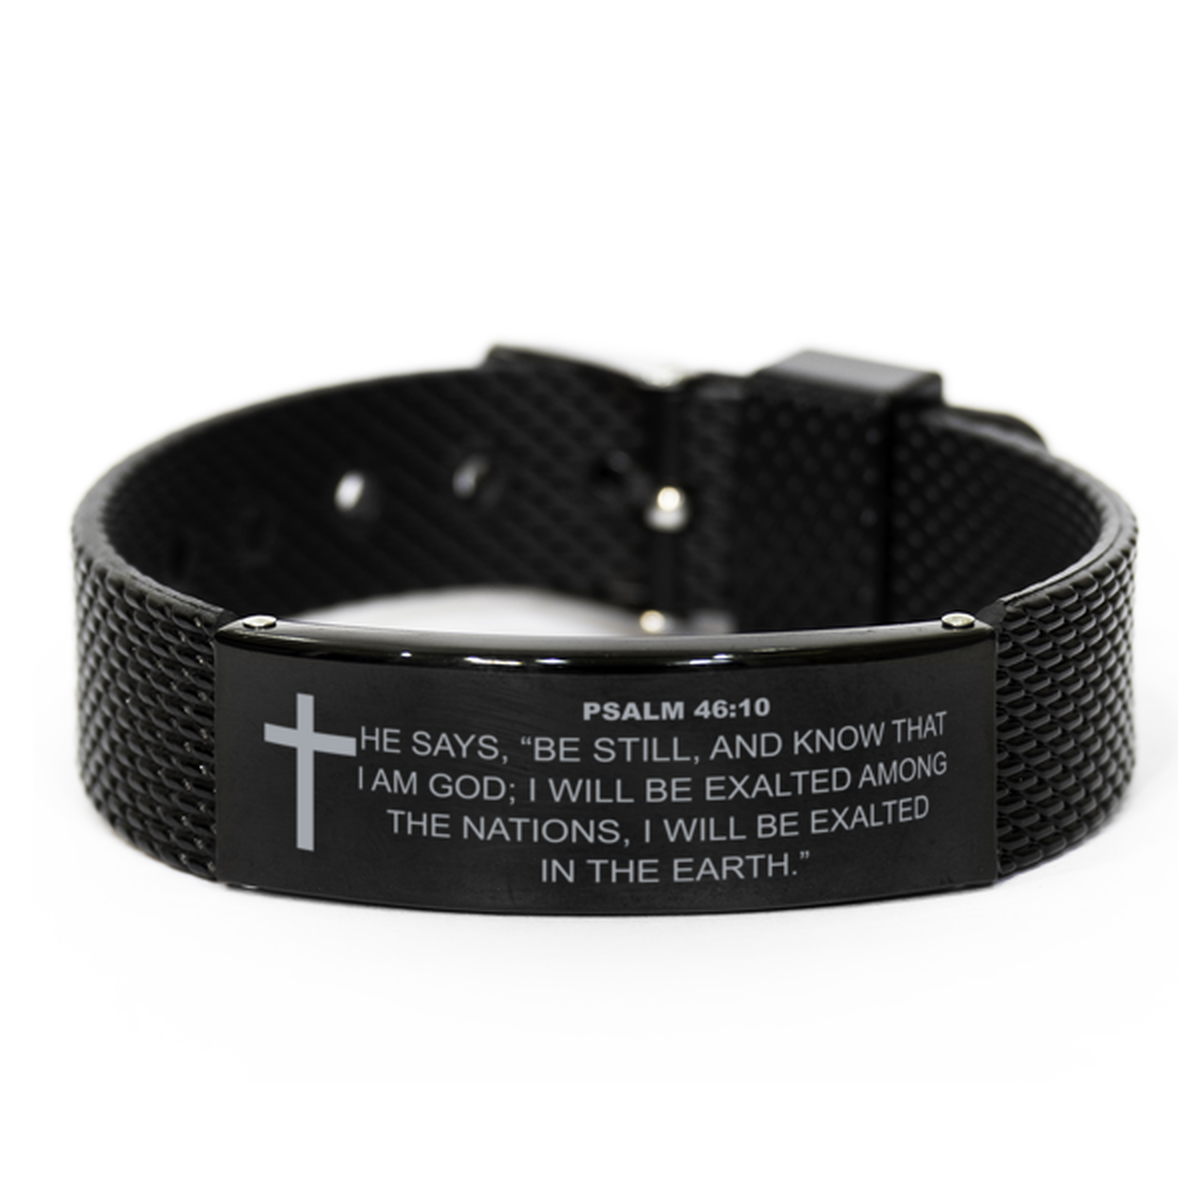 Psalm 46:10 Bracelet, Be Still And Know That I Am God, Bible Verse Bracelet, Christian Bracelet, Leather Bracelet, Easter Gift